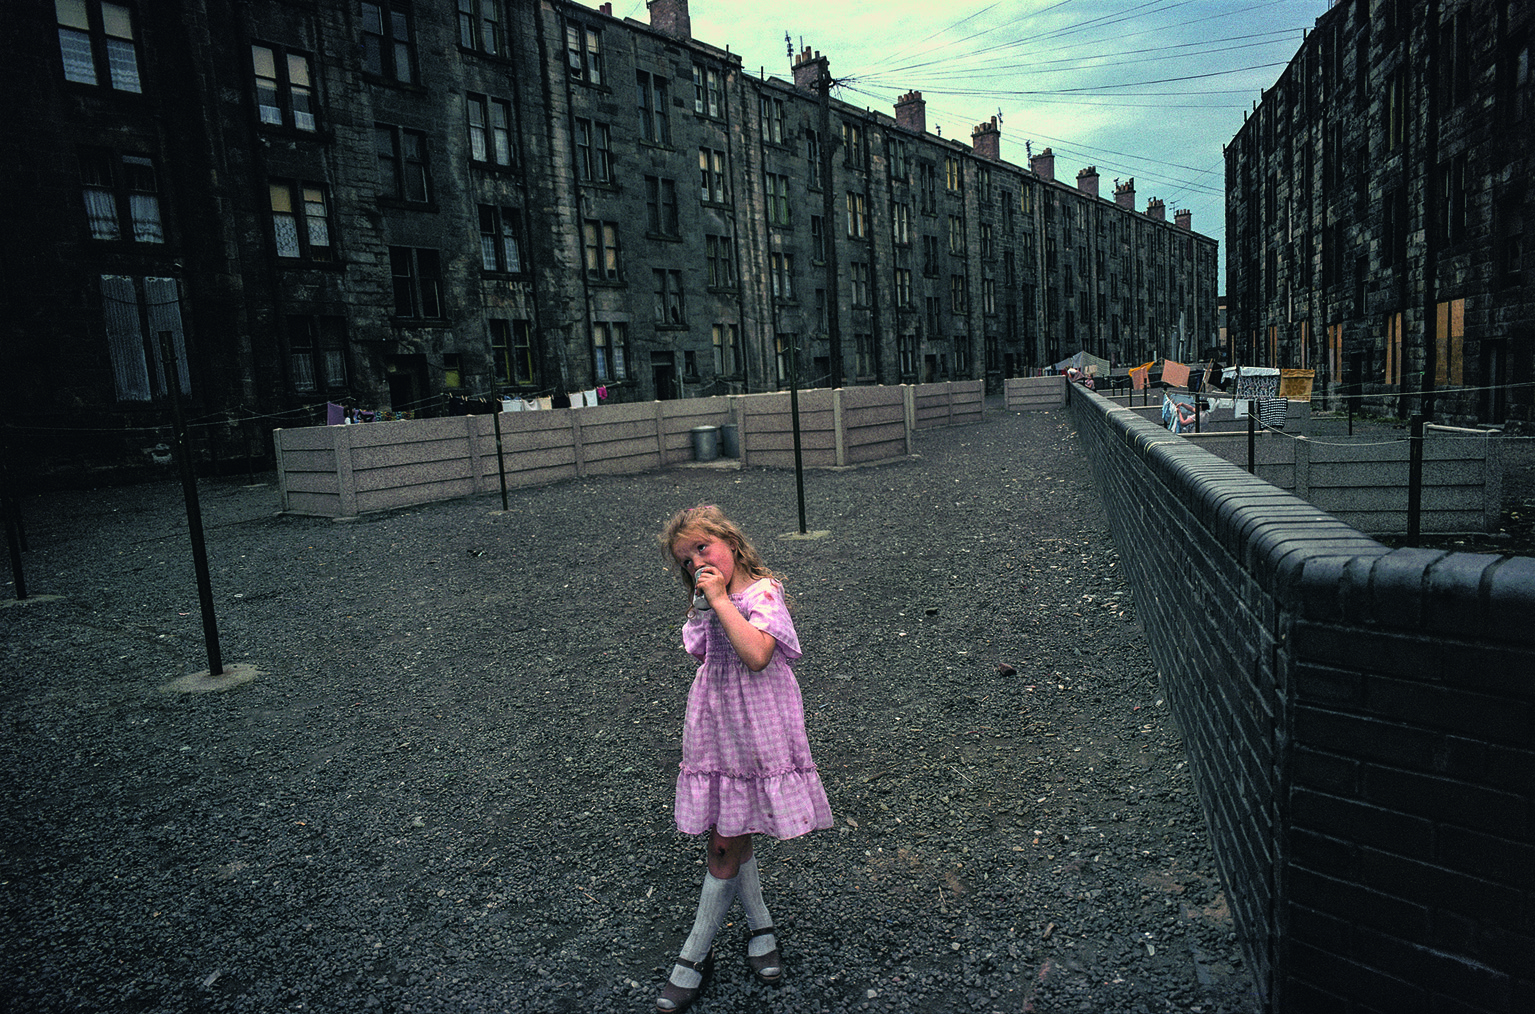 Raymond Depardon Glasgow, Écosse, 1980 34 x 51 cm © Raymond Depardon / Magnum Photos. Crédits photographiques : Légende. Lieu. Date © Raymond Depardon / Magnum Photos